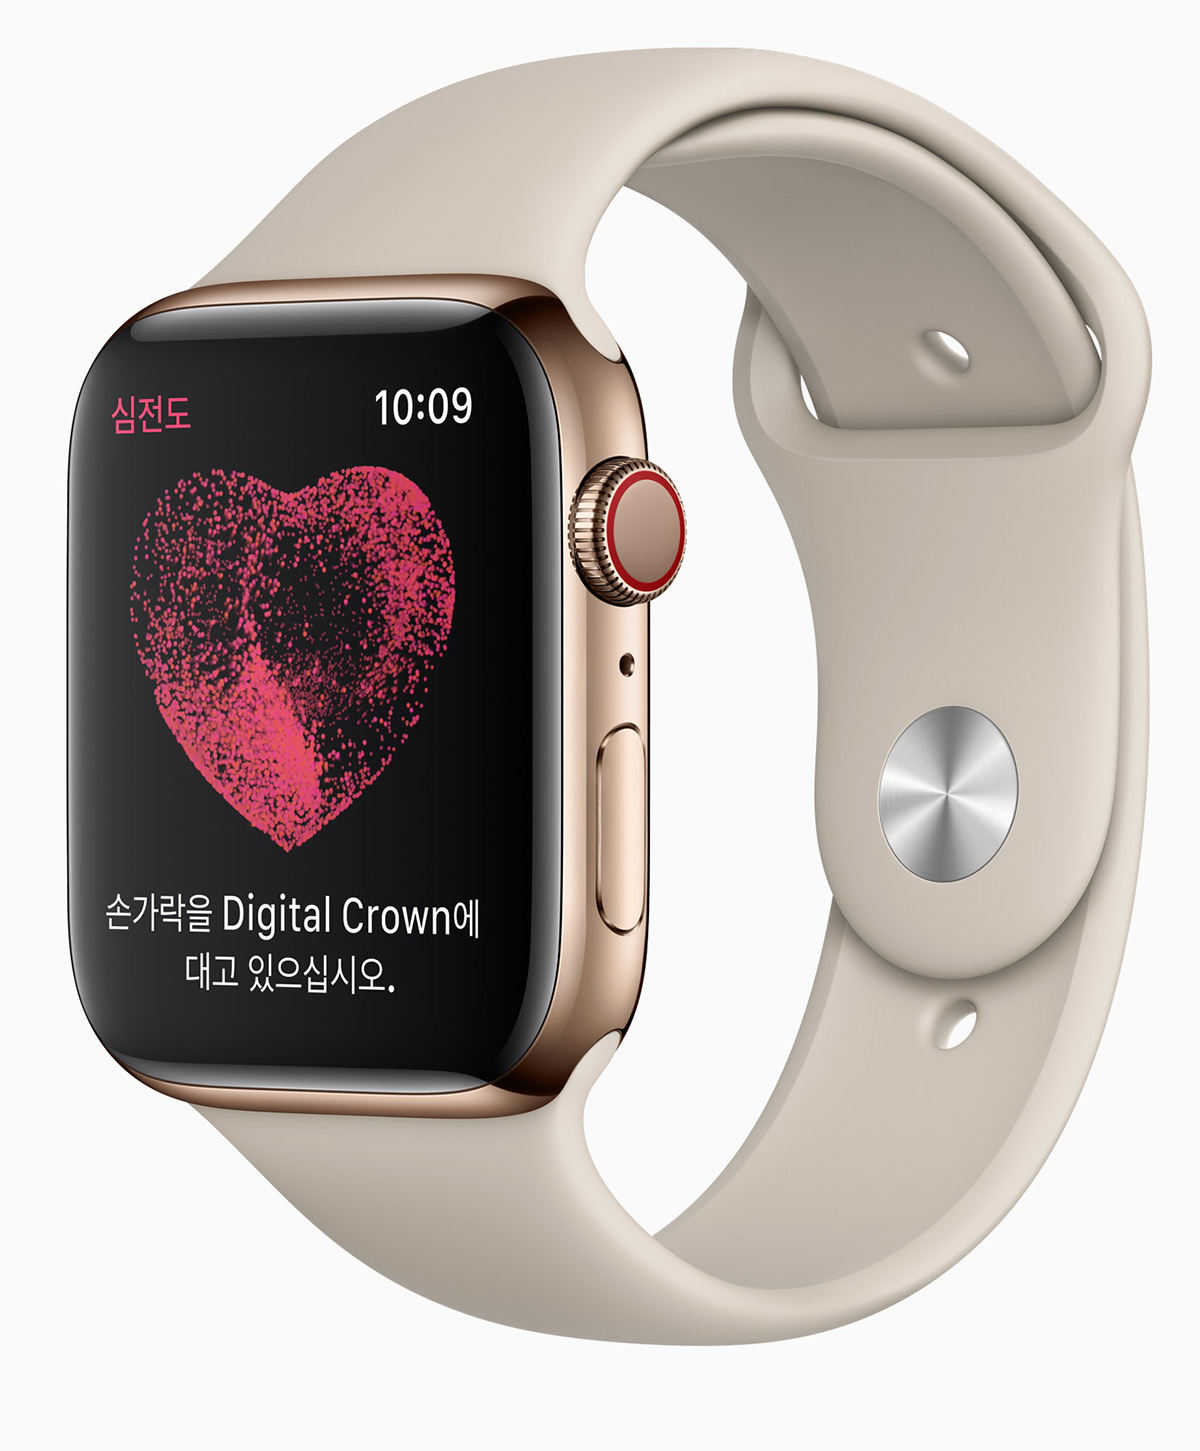 韓國 Apple Watch 將開放心電圖和心律不整通知功能